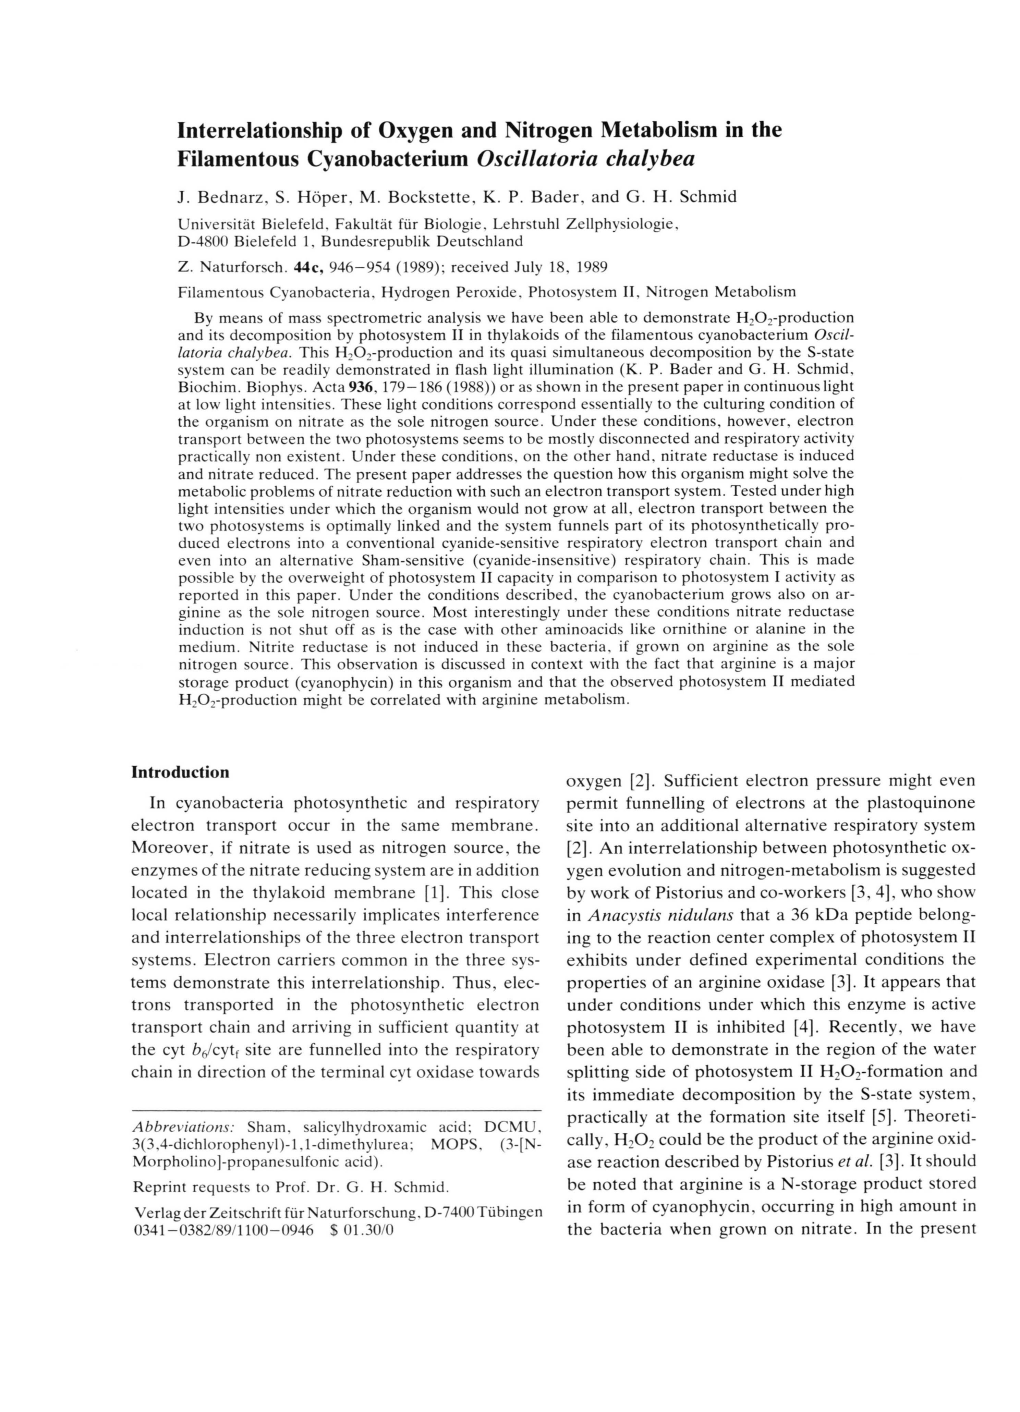 Interrelationship of Oxygen and Nitrogen Metabolism in the Filamentous Cyanobacterium Oscillatoria Chalybea